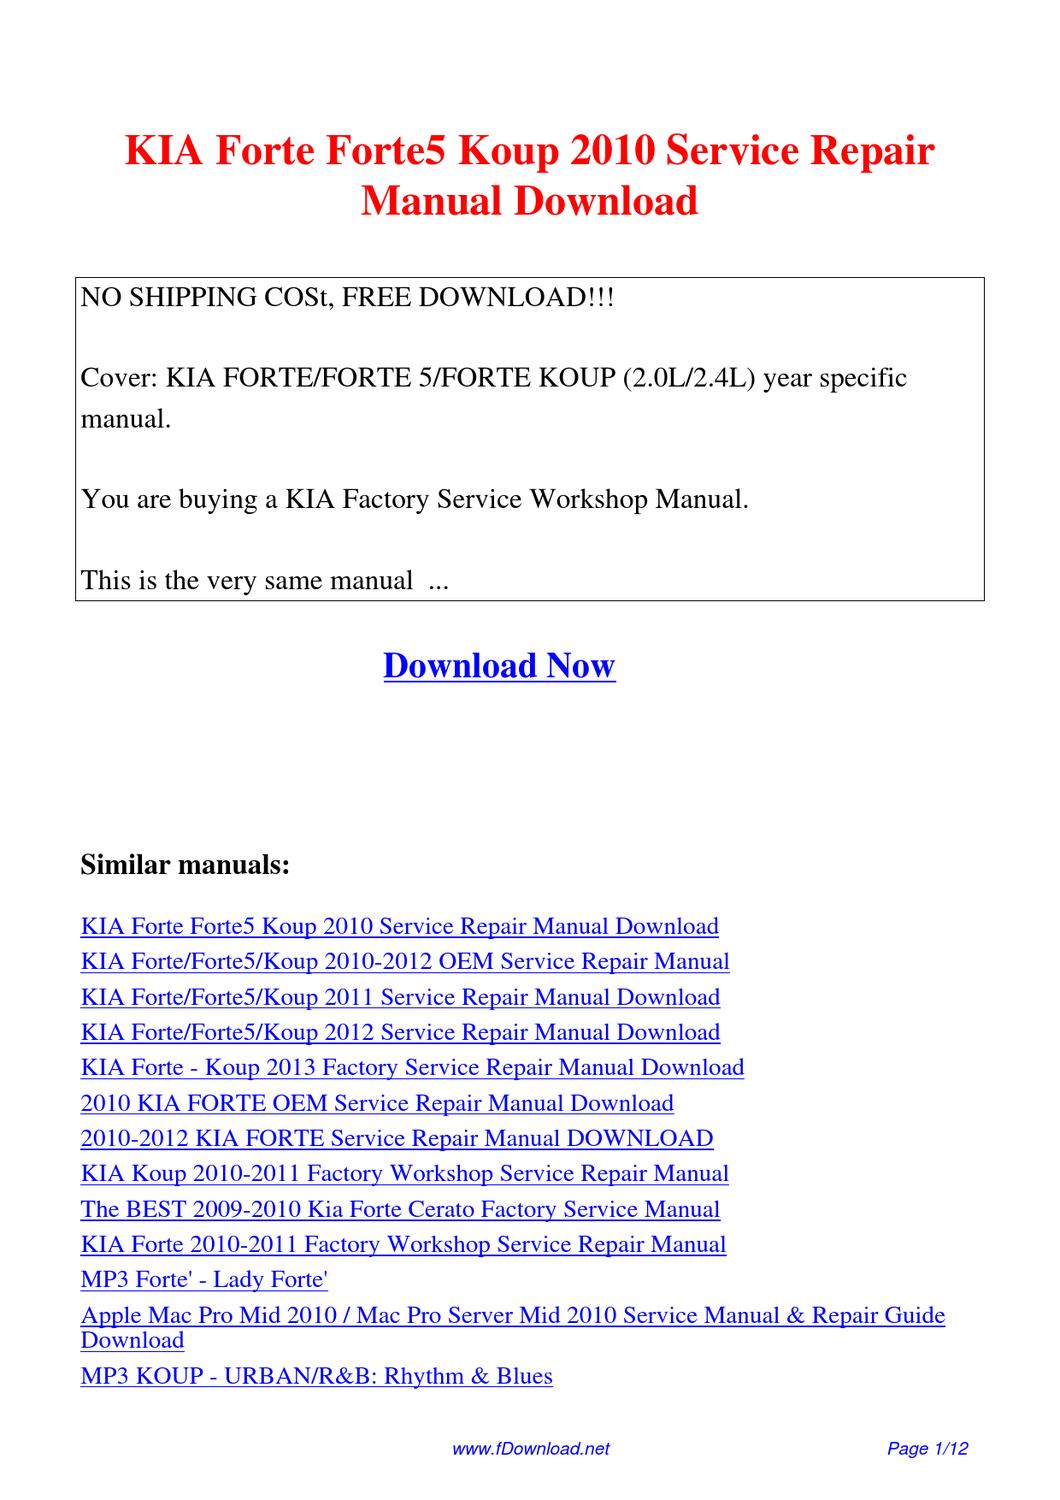 Kia Koup Forte 2010 Service Repair Manual Free Download